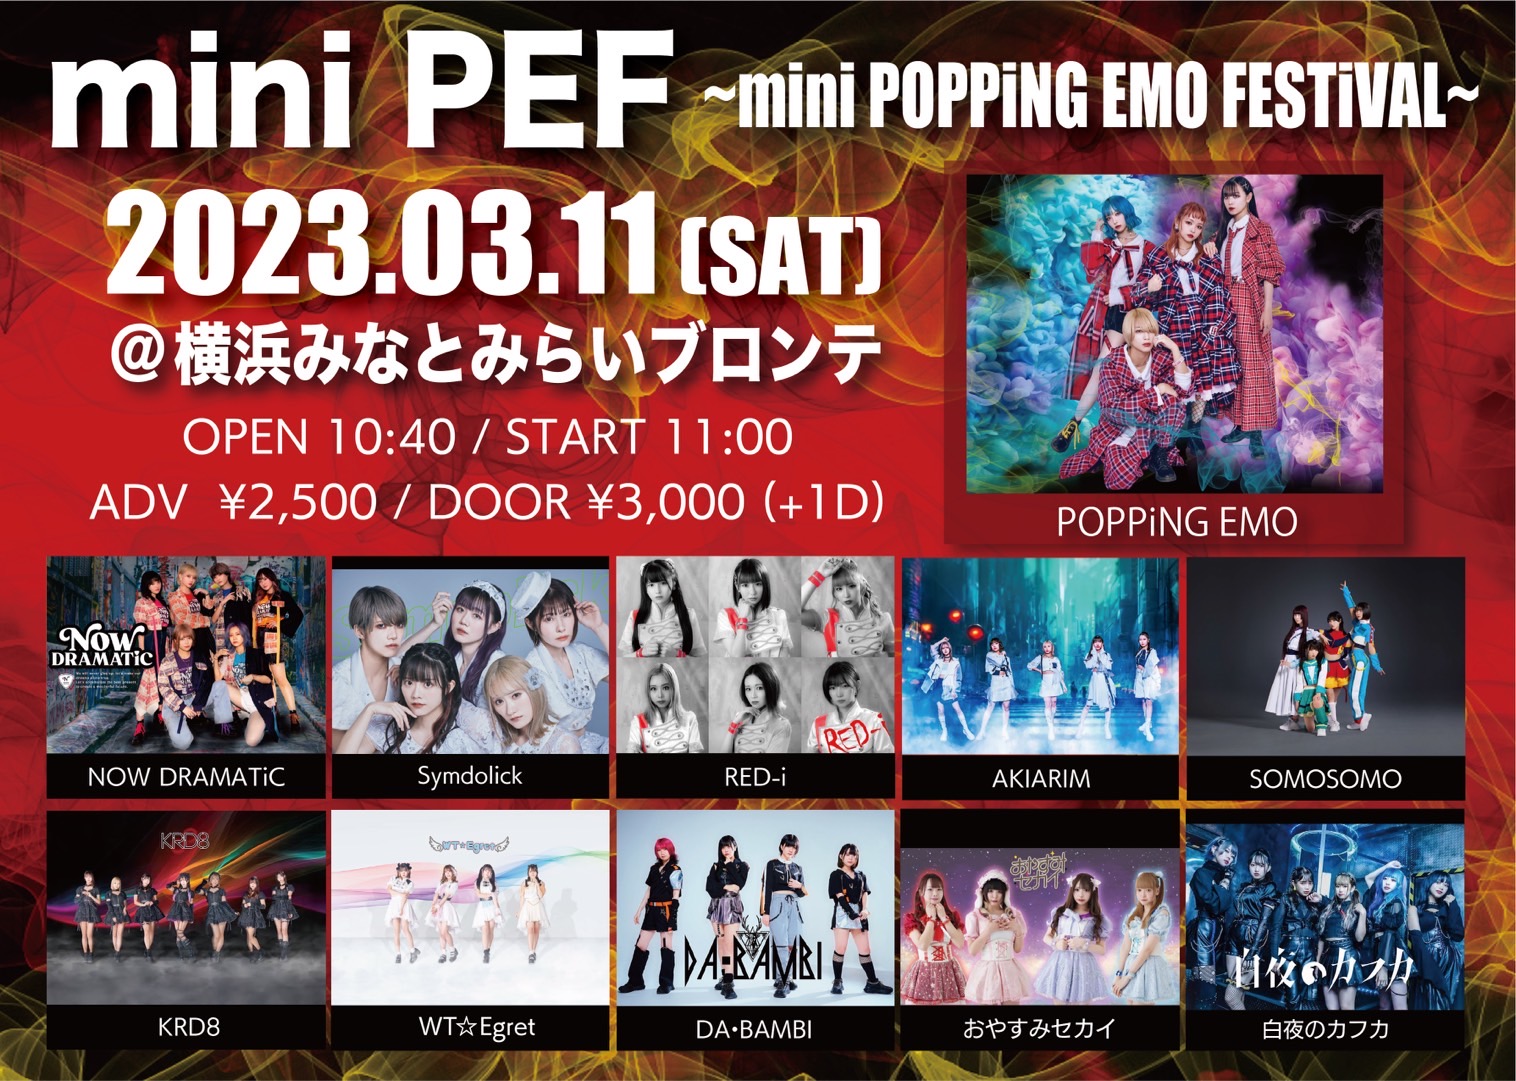 【横浜】O-key presents“miniPEF”~mini POPPiNG EMO FESTiVAL~